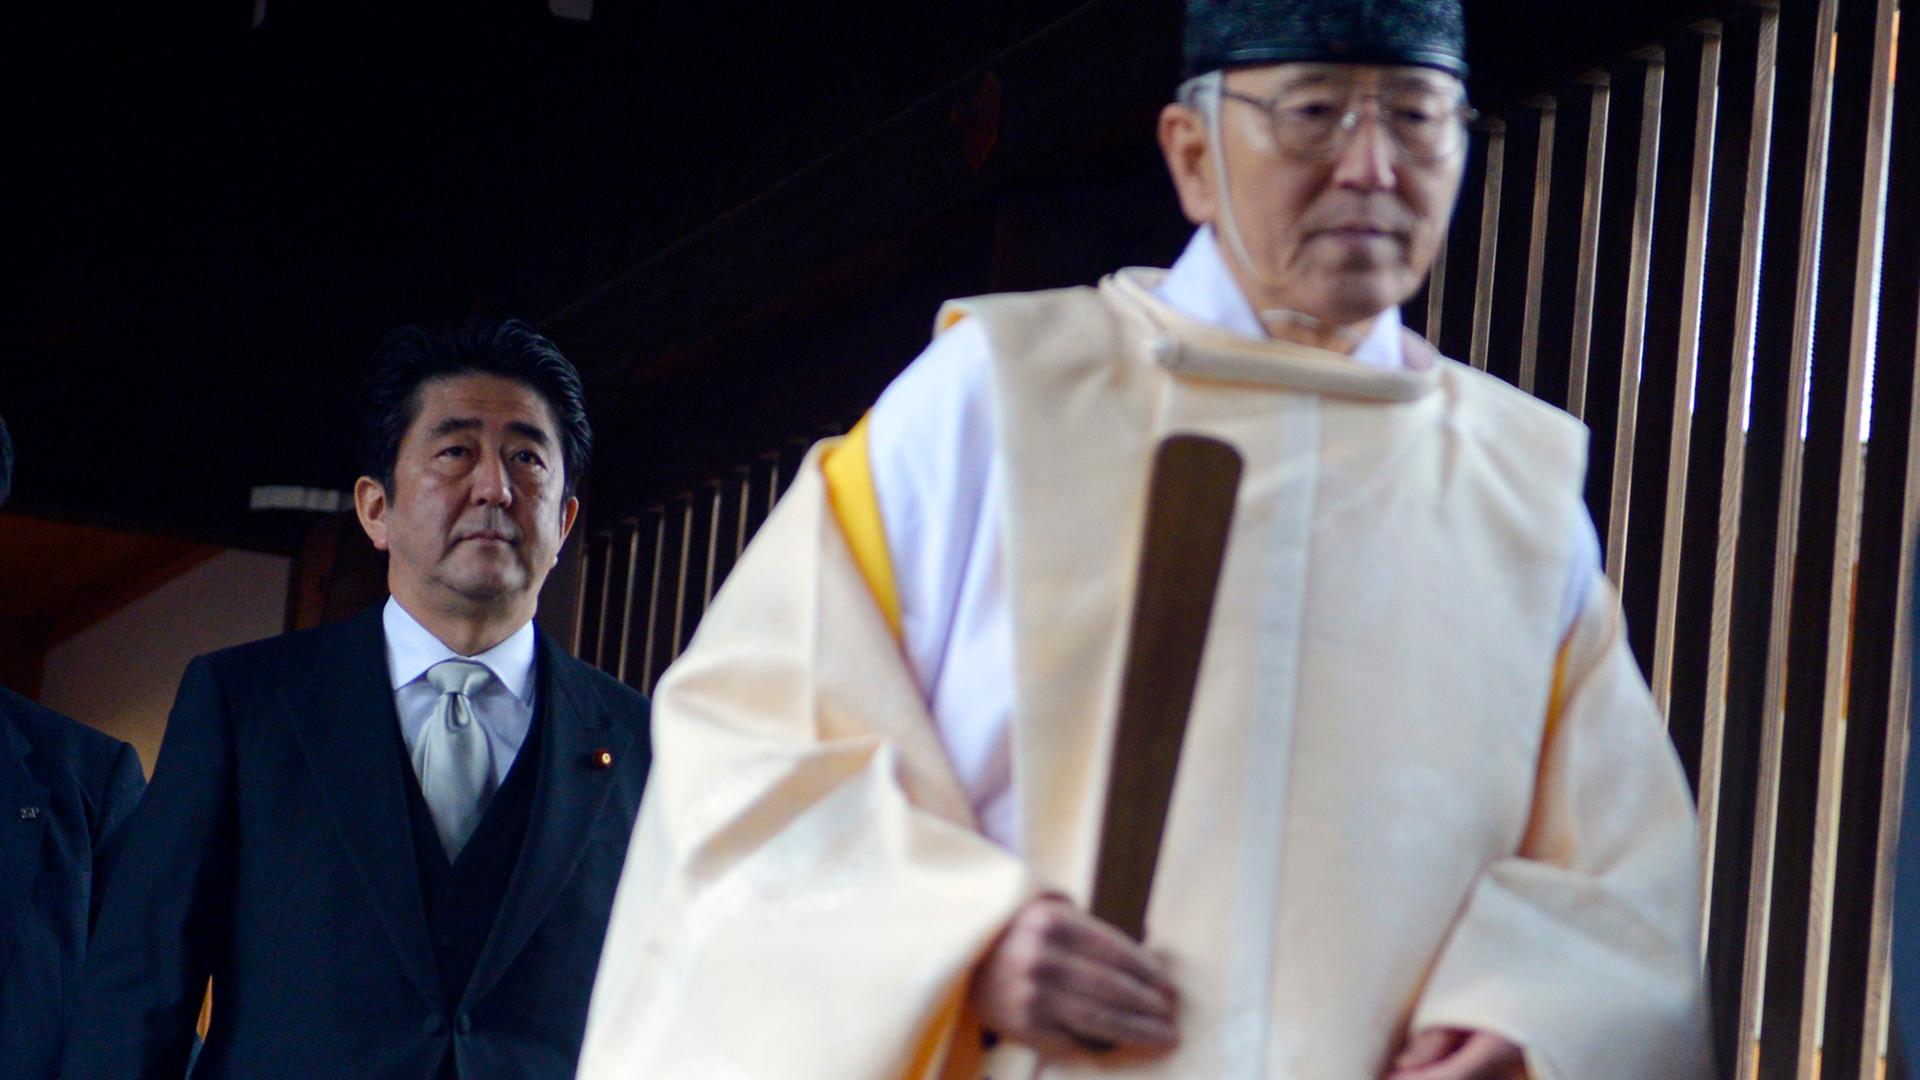 Der japanische Minsterpräsident Shinzo Abe (l.) folgt einem Priester bei seinem Besuch des Yasukuni-Schreins in Tokio am 26. Dezember 2013